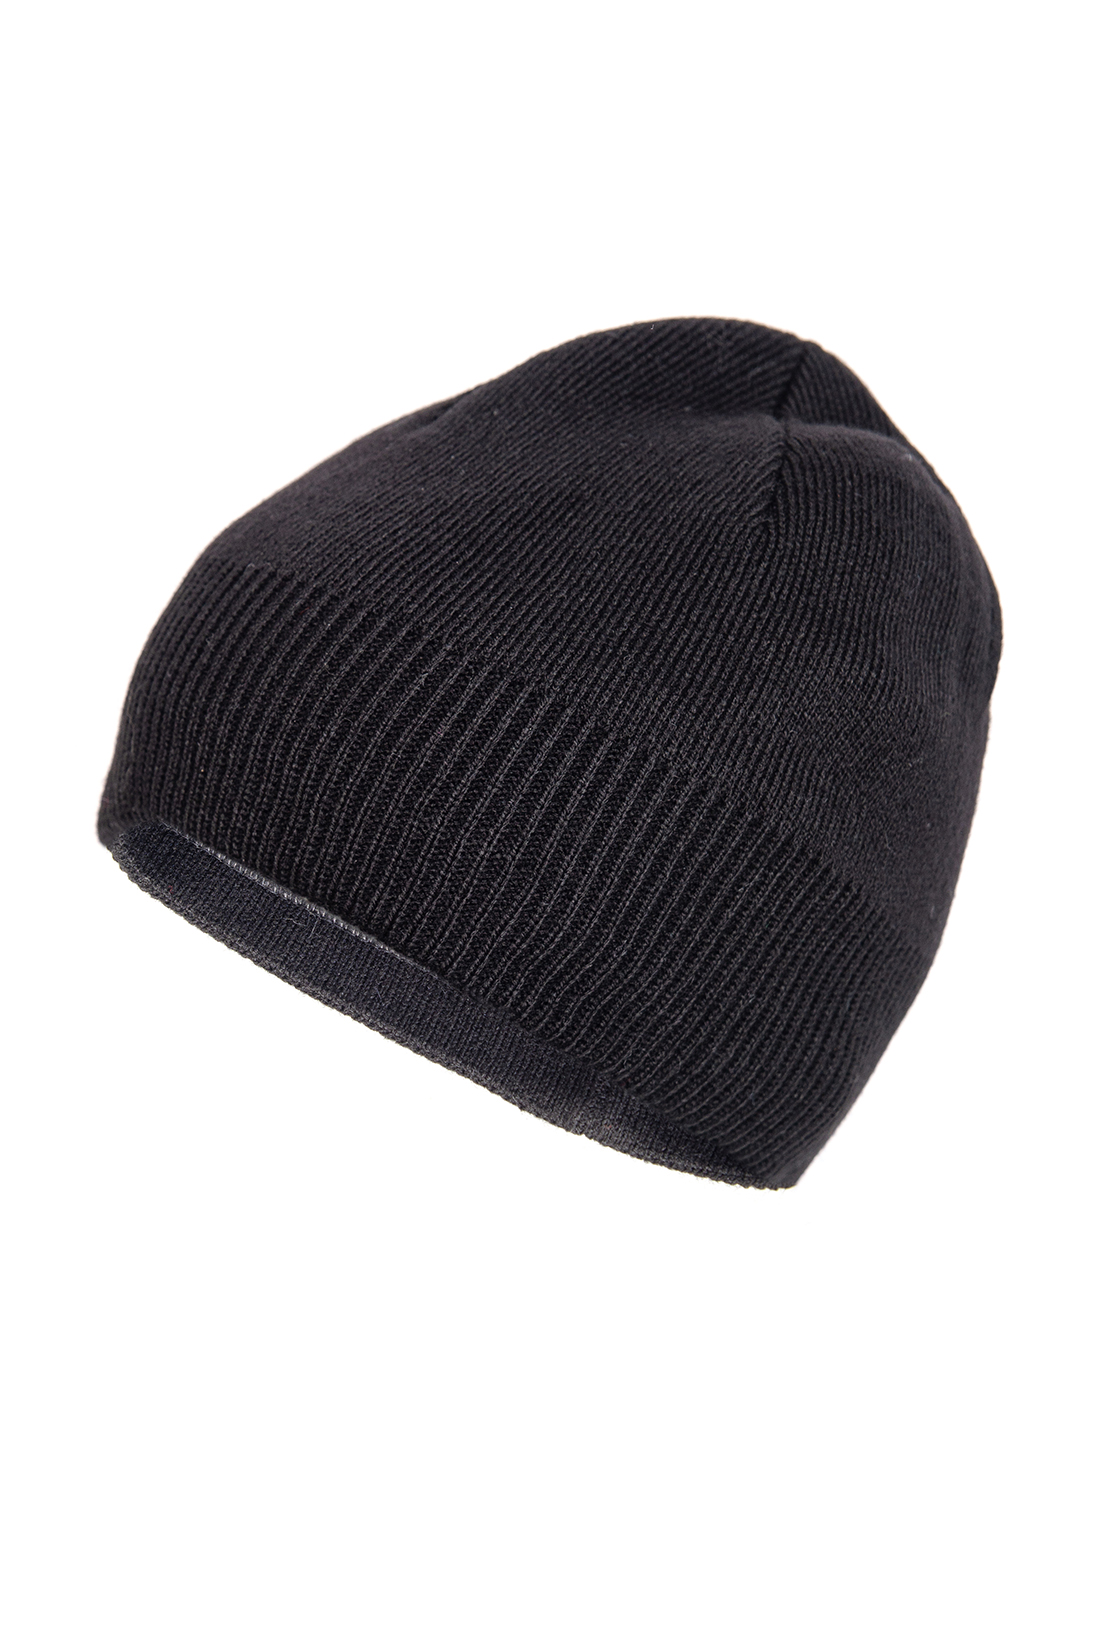 Чёрная шапка на флисе (арт. baon B849545), размер Б/р 58, цвет черный Чёрная шапка на флисе (арт. baon B849545) - фото 2